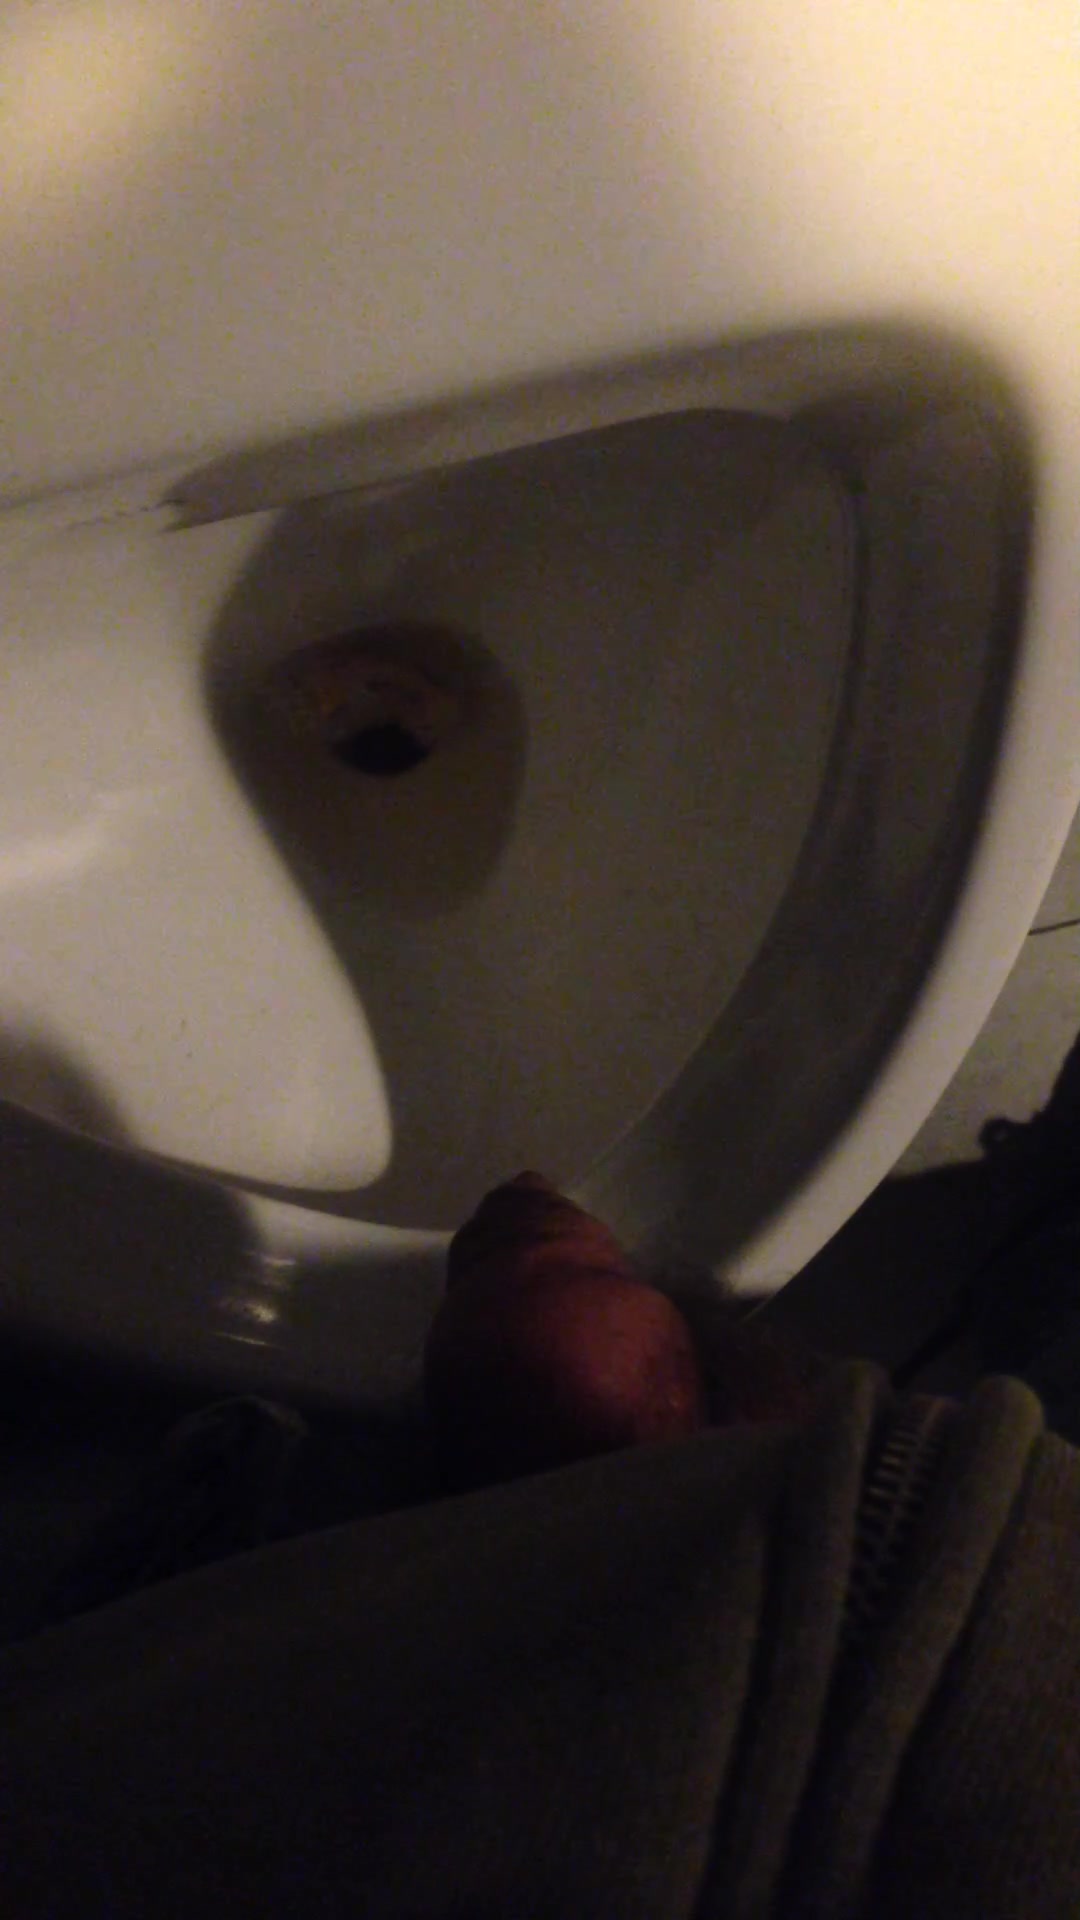 piss in urinal